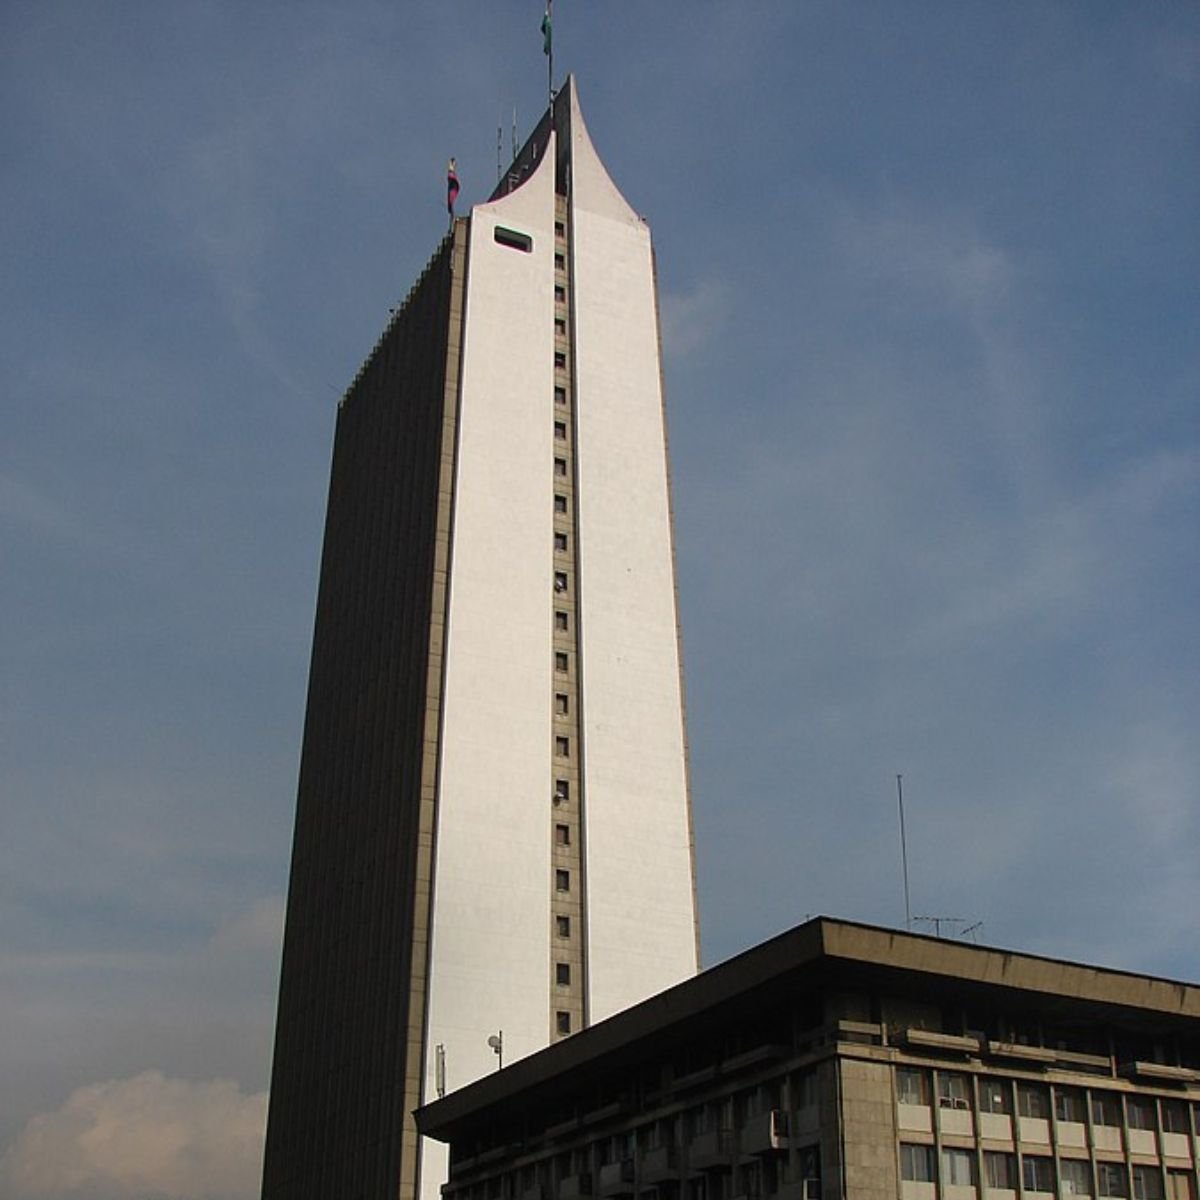 Edificio Coltejer - La historia del edificio Coltejer, el más alto de Latinoamérica en los años 70 y la insignia de Medellín